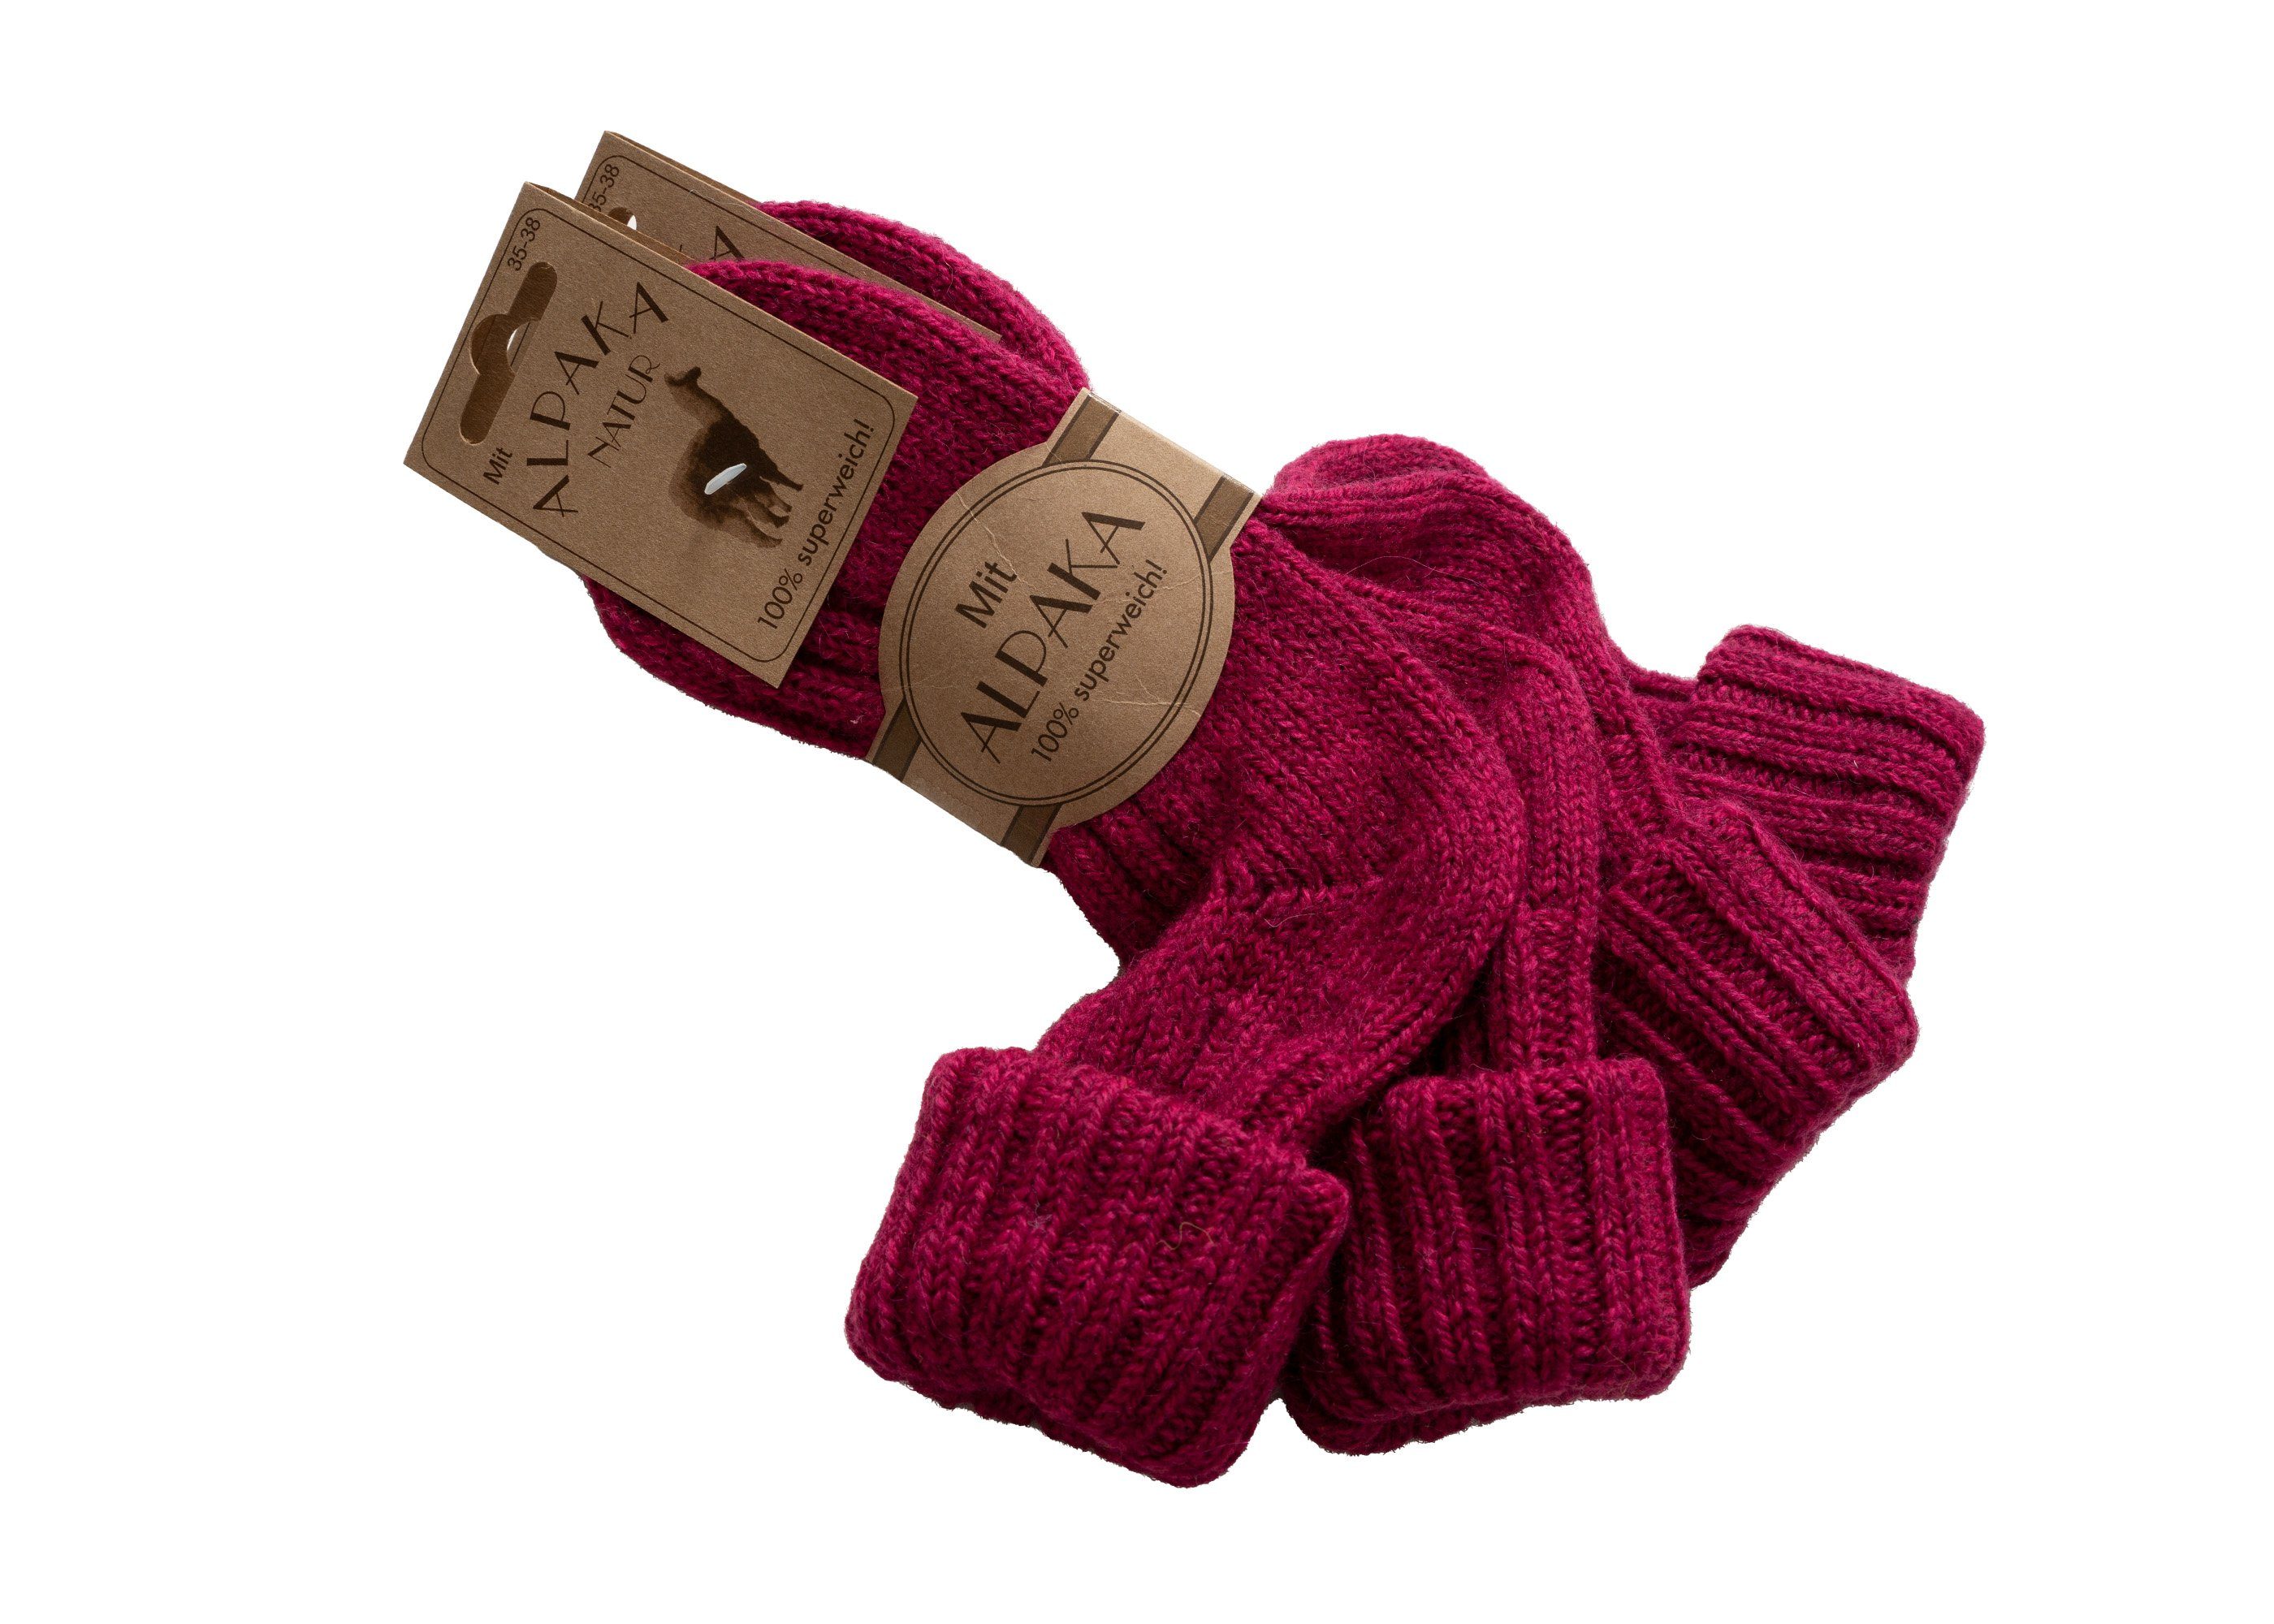 und Socken Umschlag warme mit Wolle Socken Wollanteil 40% HomeOfSocks Socken Alpakawolle Pink mit Strapazierfähige Bunte mit und Alpakawolle und